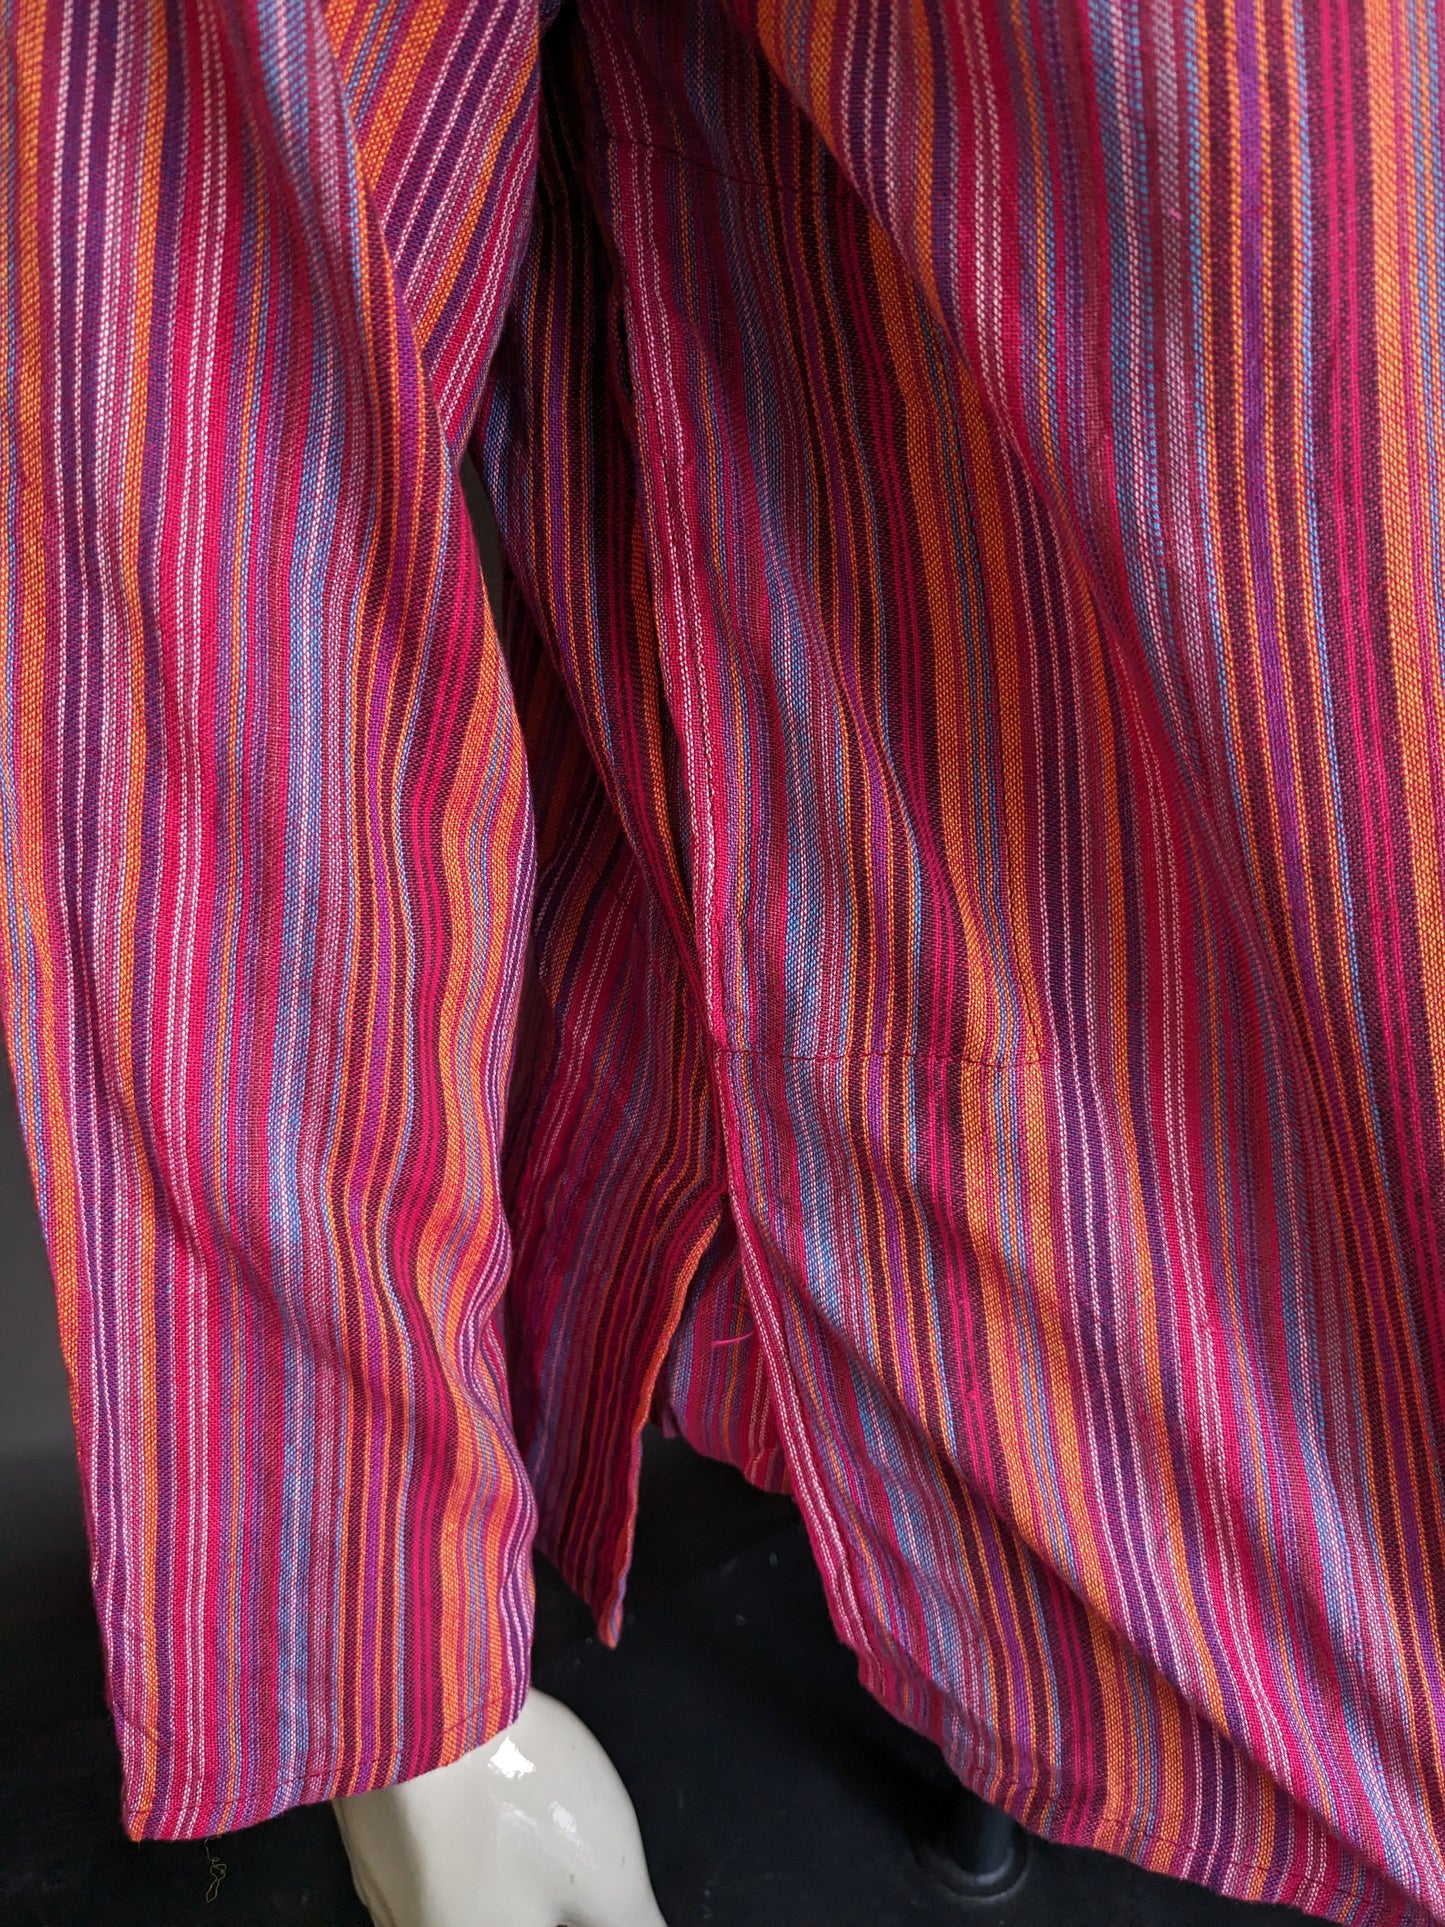 Vintage Modas Bagdad Polotrui / Camisa con collar MAO / Standing / Farmer. Rayado rojo / de color. Talla L.